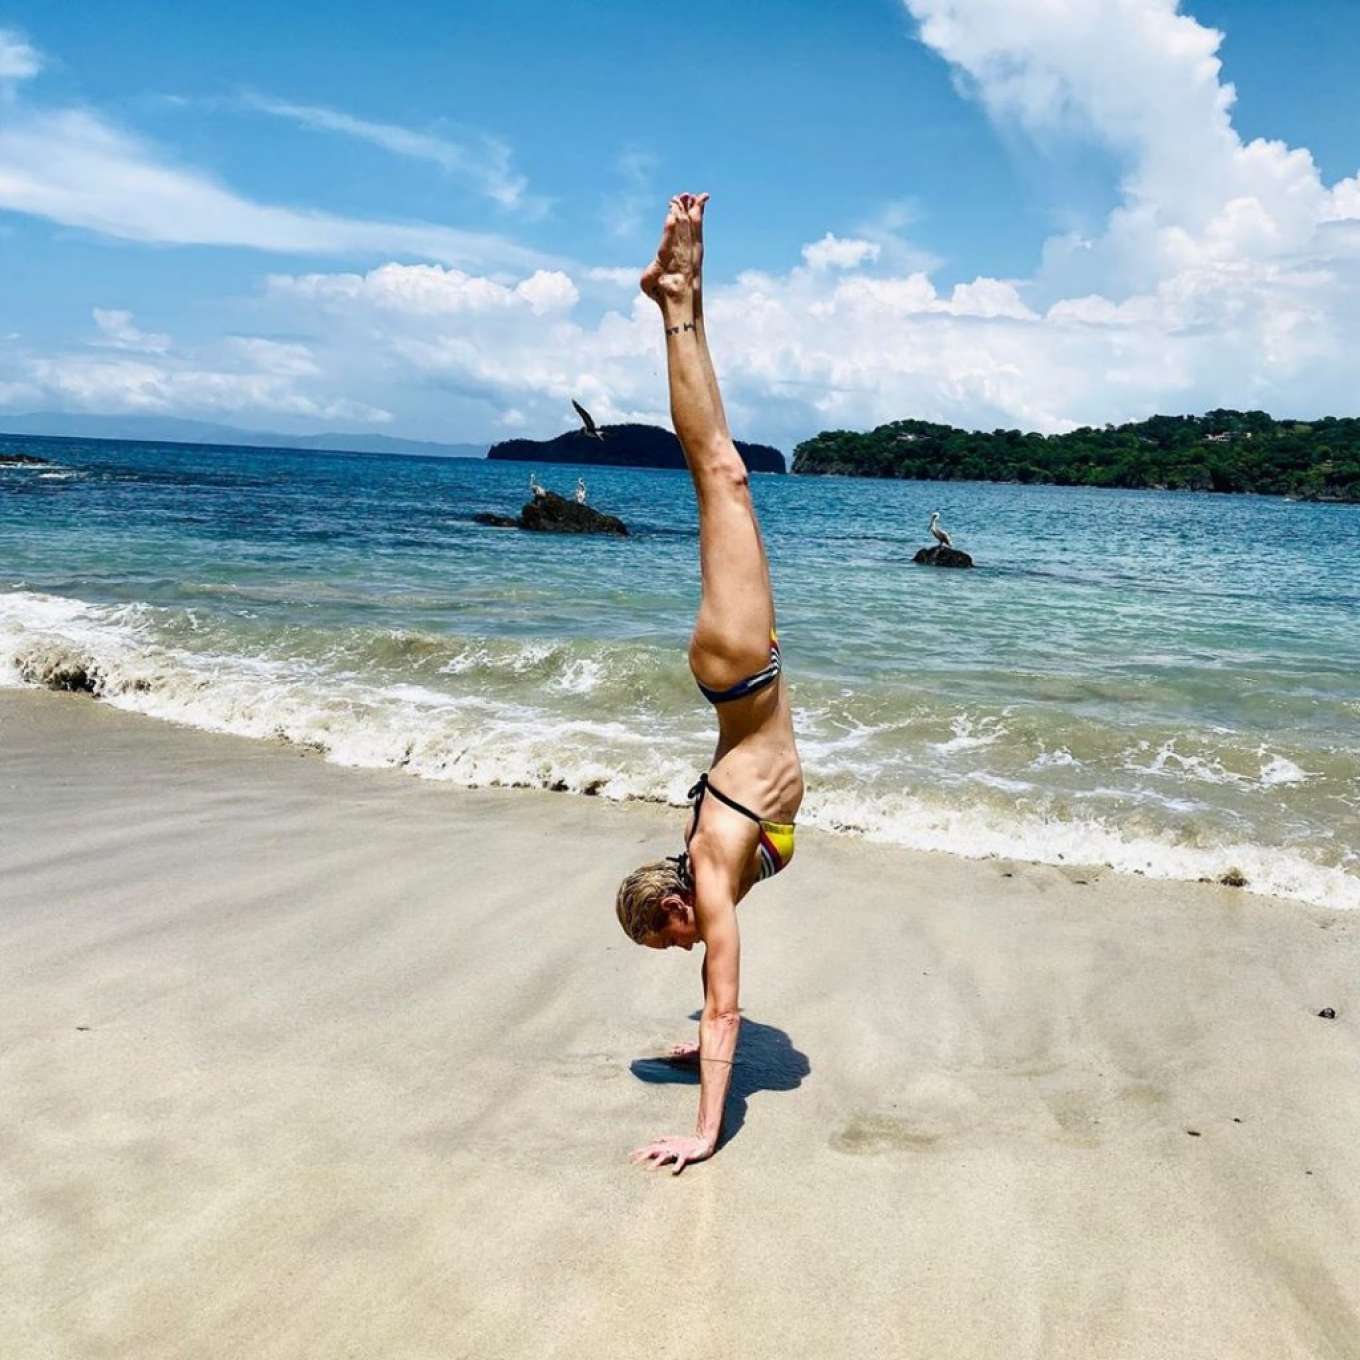 Katie Cassidy 2019 : Katie Cassidy in Bikini in Costa Rica - Instagram-02. 